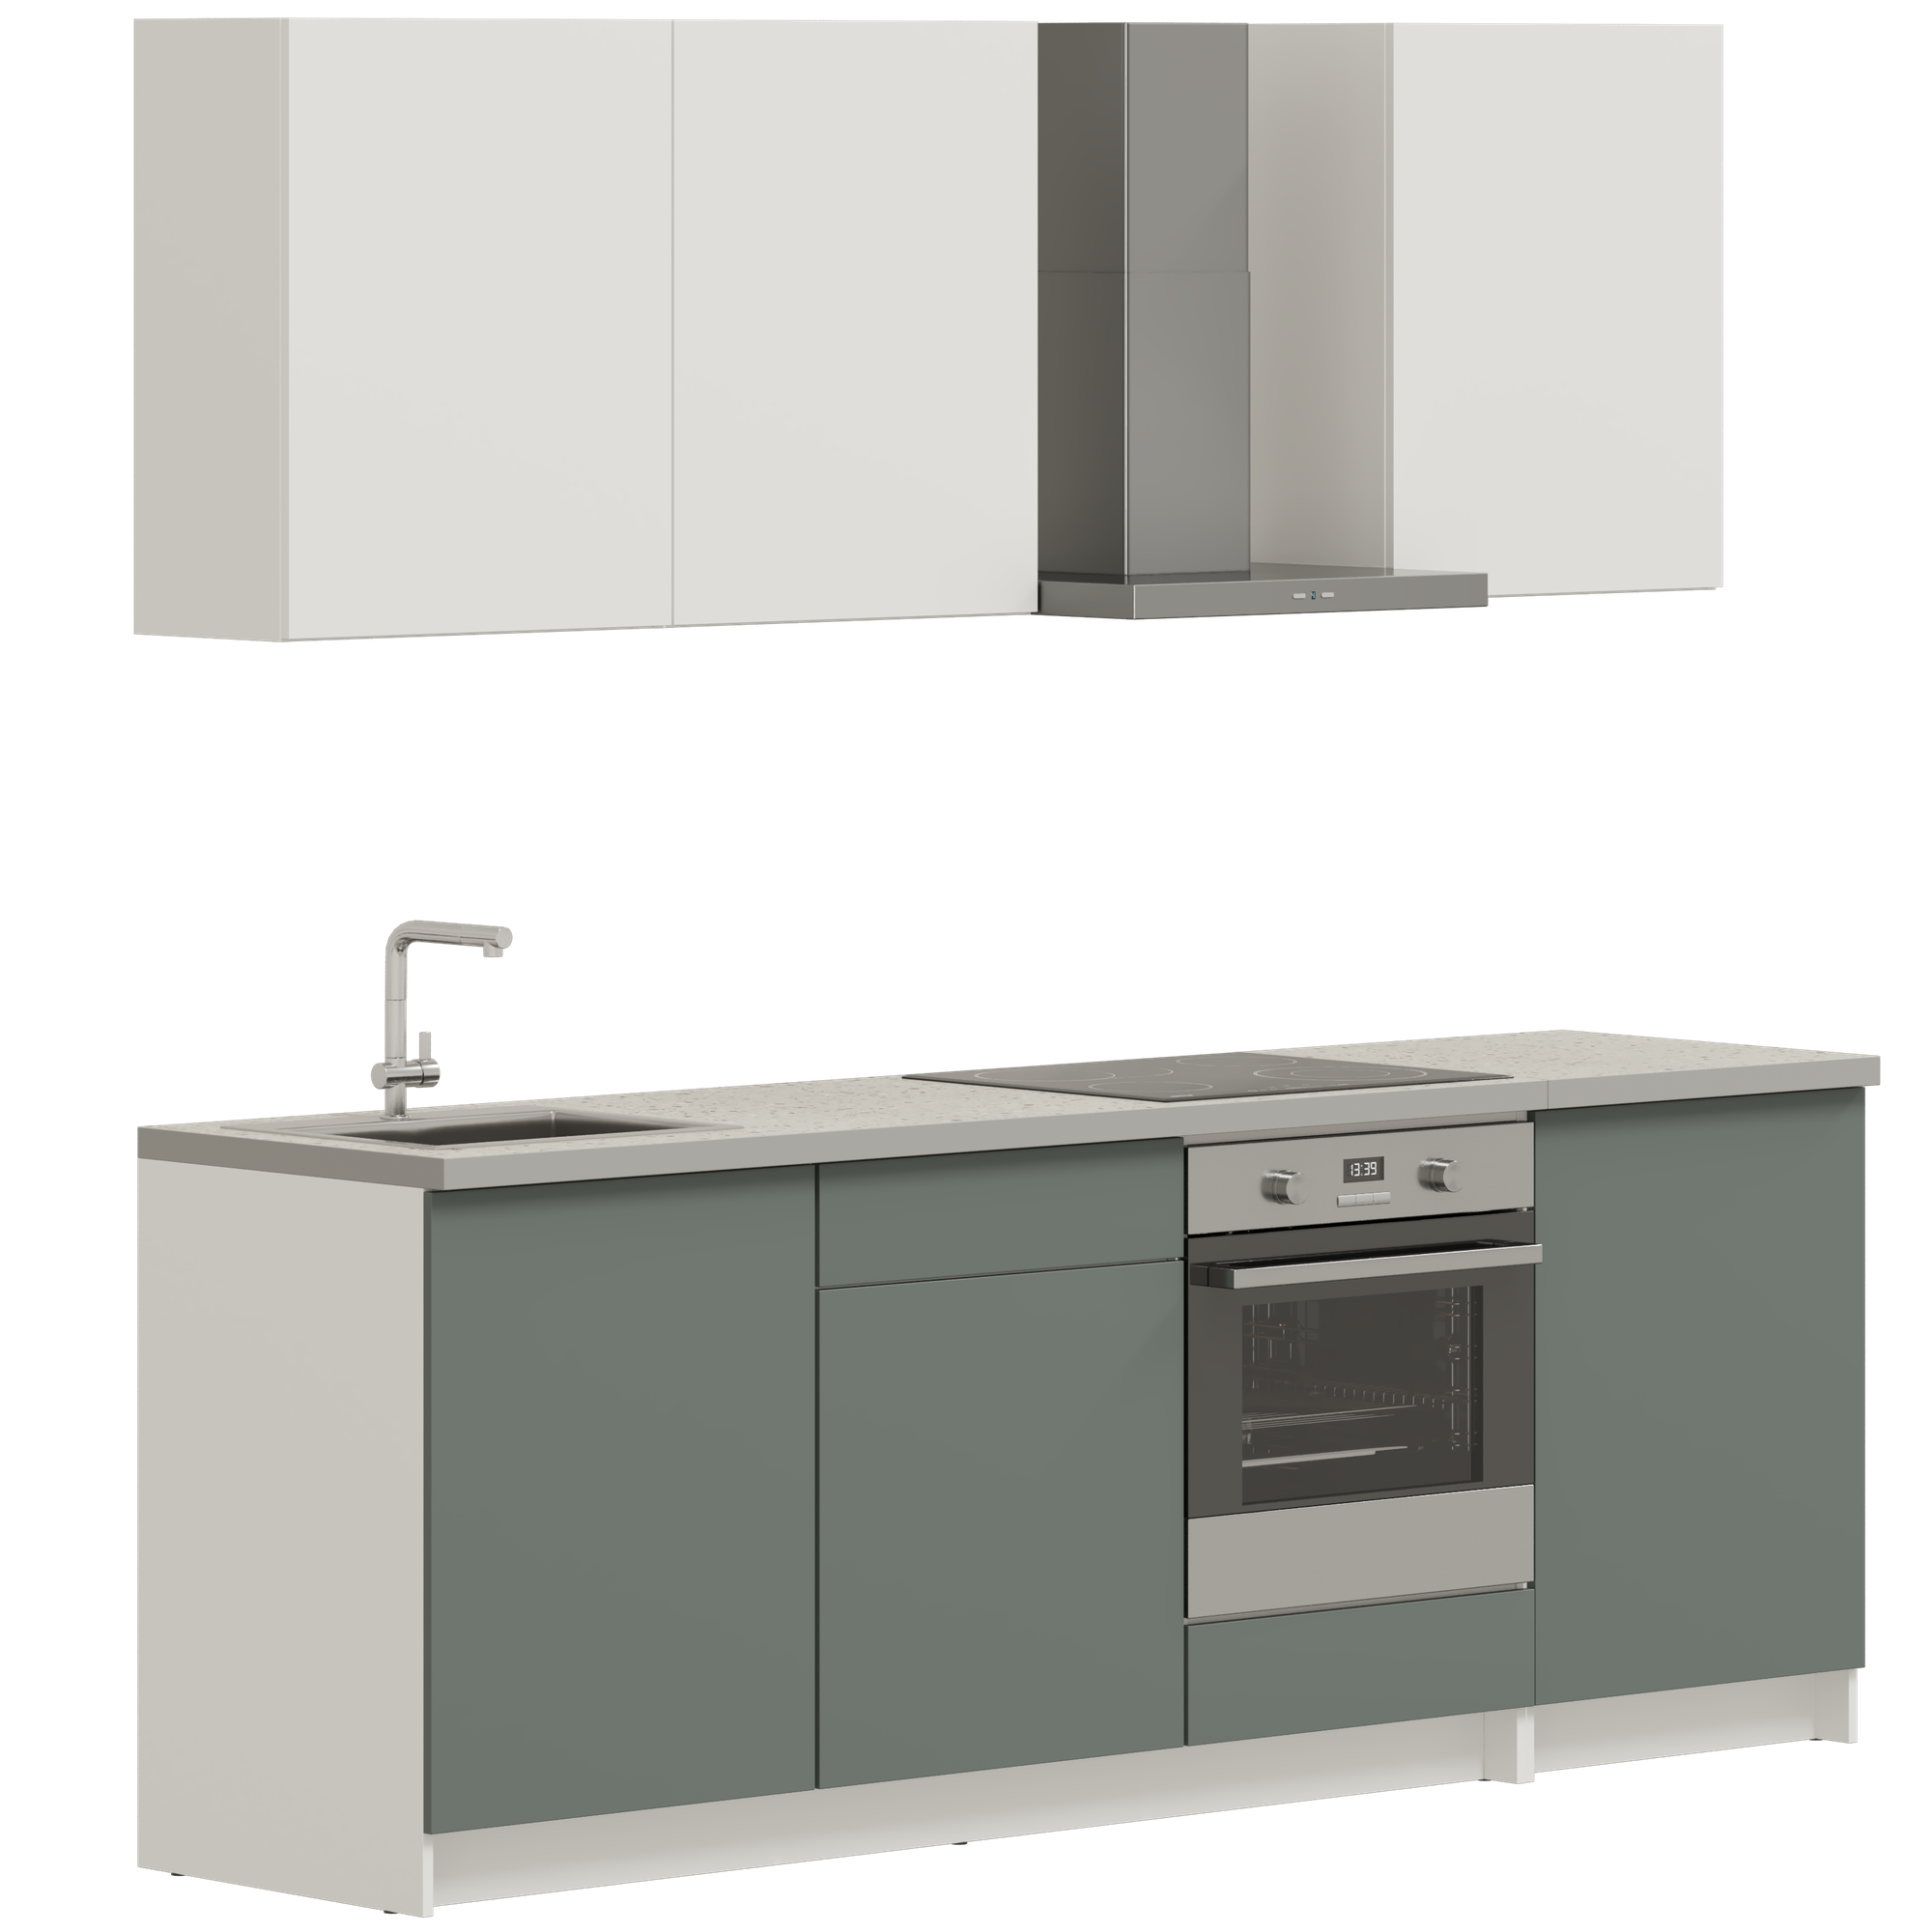 Кухонный гарнитур, кухня прямая Pragma Elinda 242 см (2,42 м), под встраиваемую духовку, со столешницей, ЛДСП, дымчатый зеленый/белый